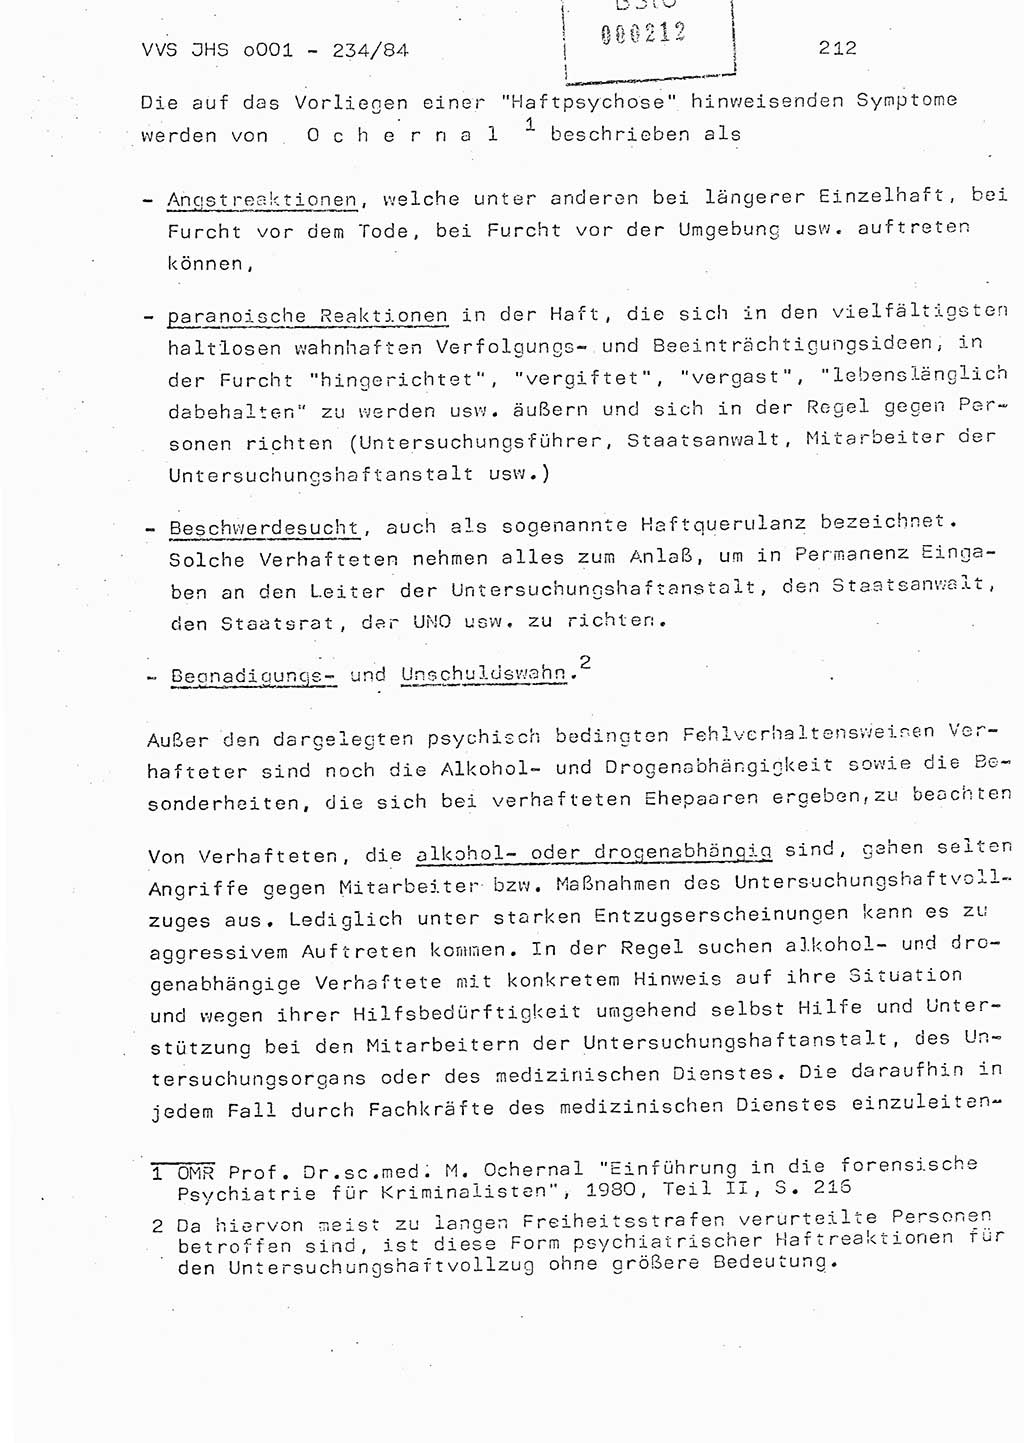 Dissertation Oberst Siegfried Rataizick (Abt. ⅩⅣ), Oberstleutnant Volkmar Heinz (Abt. ⅩⅣ), Oberstleutnant Werner Stein (HA Ⅸ), Hauptmann Heinz Conrad (JHS), Ministerium für Staatssicherheit (MfS) [Deutsche Demokratische Republik (DDR)], Juristische Hochschule (JHS), Vertrauliche Verschlußsache (VVS) o001-234/84, Potsdam 1984, Seite 212 (Diss. MfS DDR JHS VVS o001-234/84 1984, S. 212)